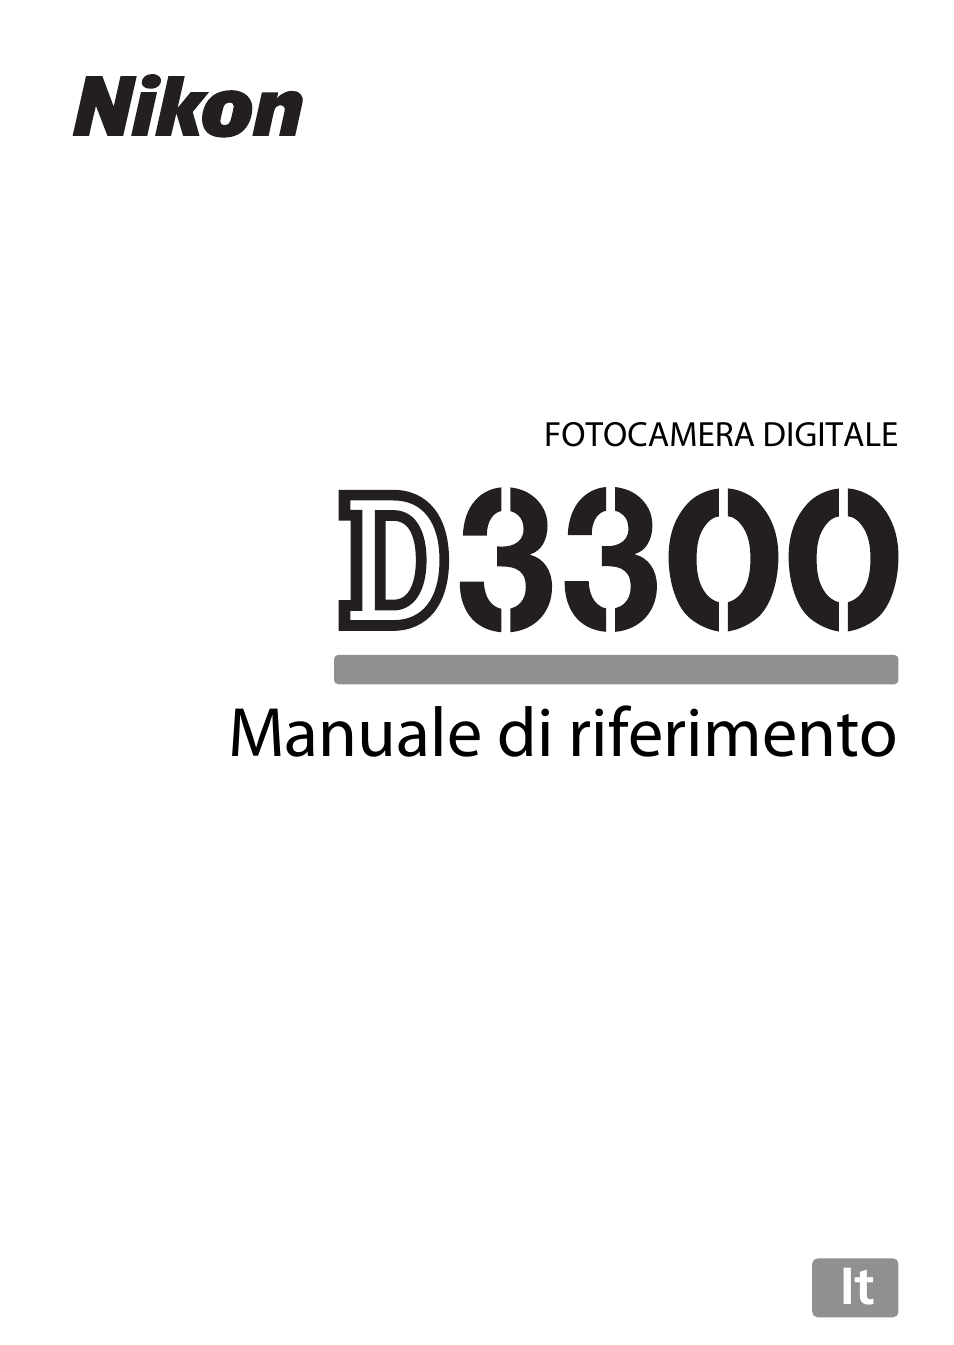 manuale di 392 pagine a colori A5 Stampato Nikon D3300 DIGITAL CAMERA GUIDA UTENTE 